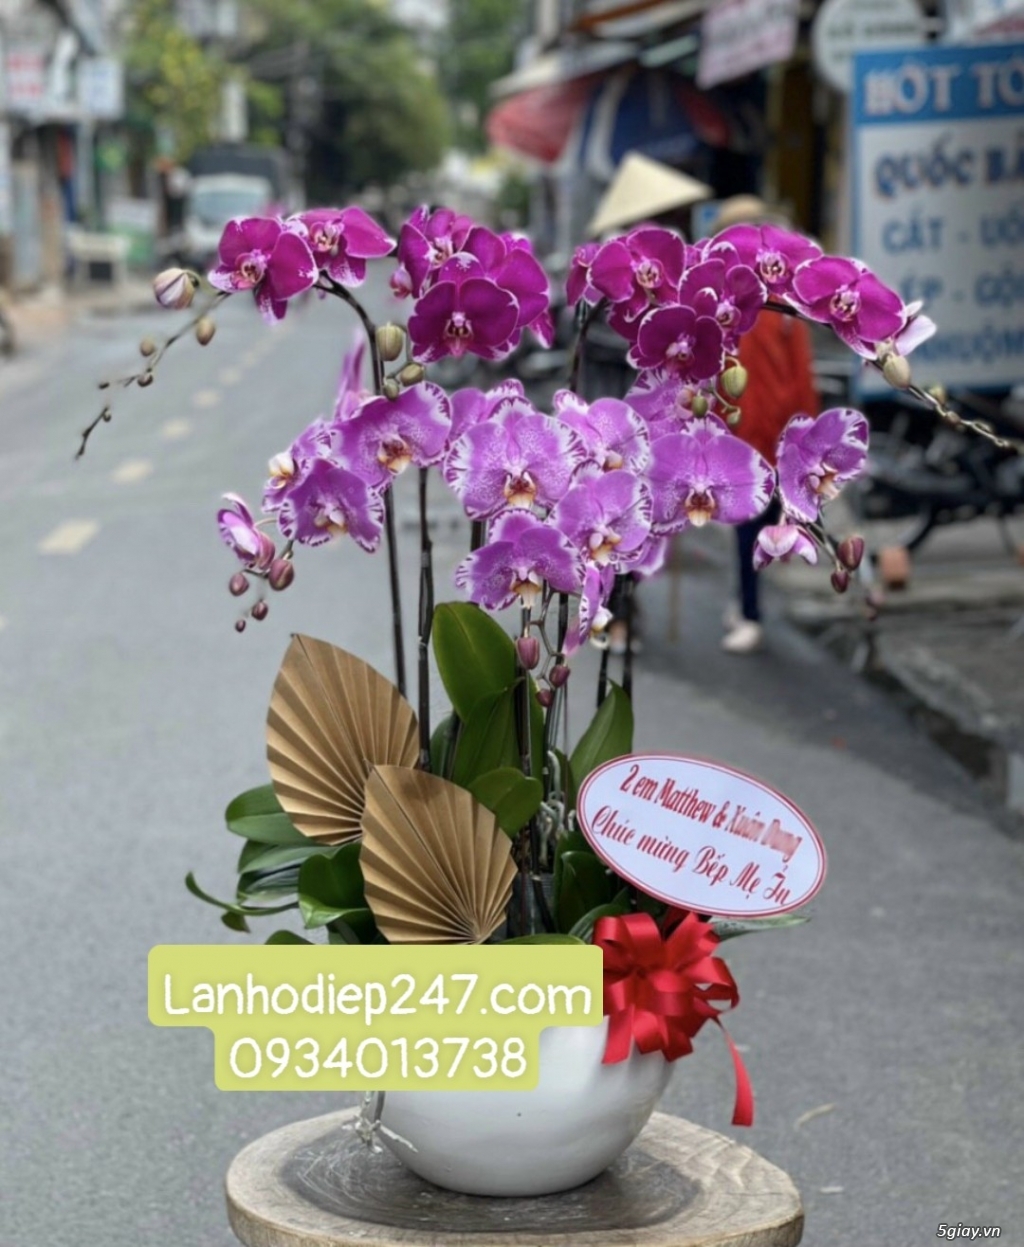 Hoa Tươi Sài Gòn 247 chuyên cung cấp Lan Hồ Điệp dịch vụ điện hoa 247 - 13